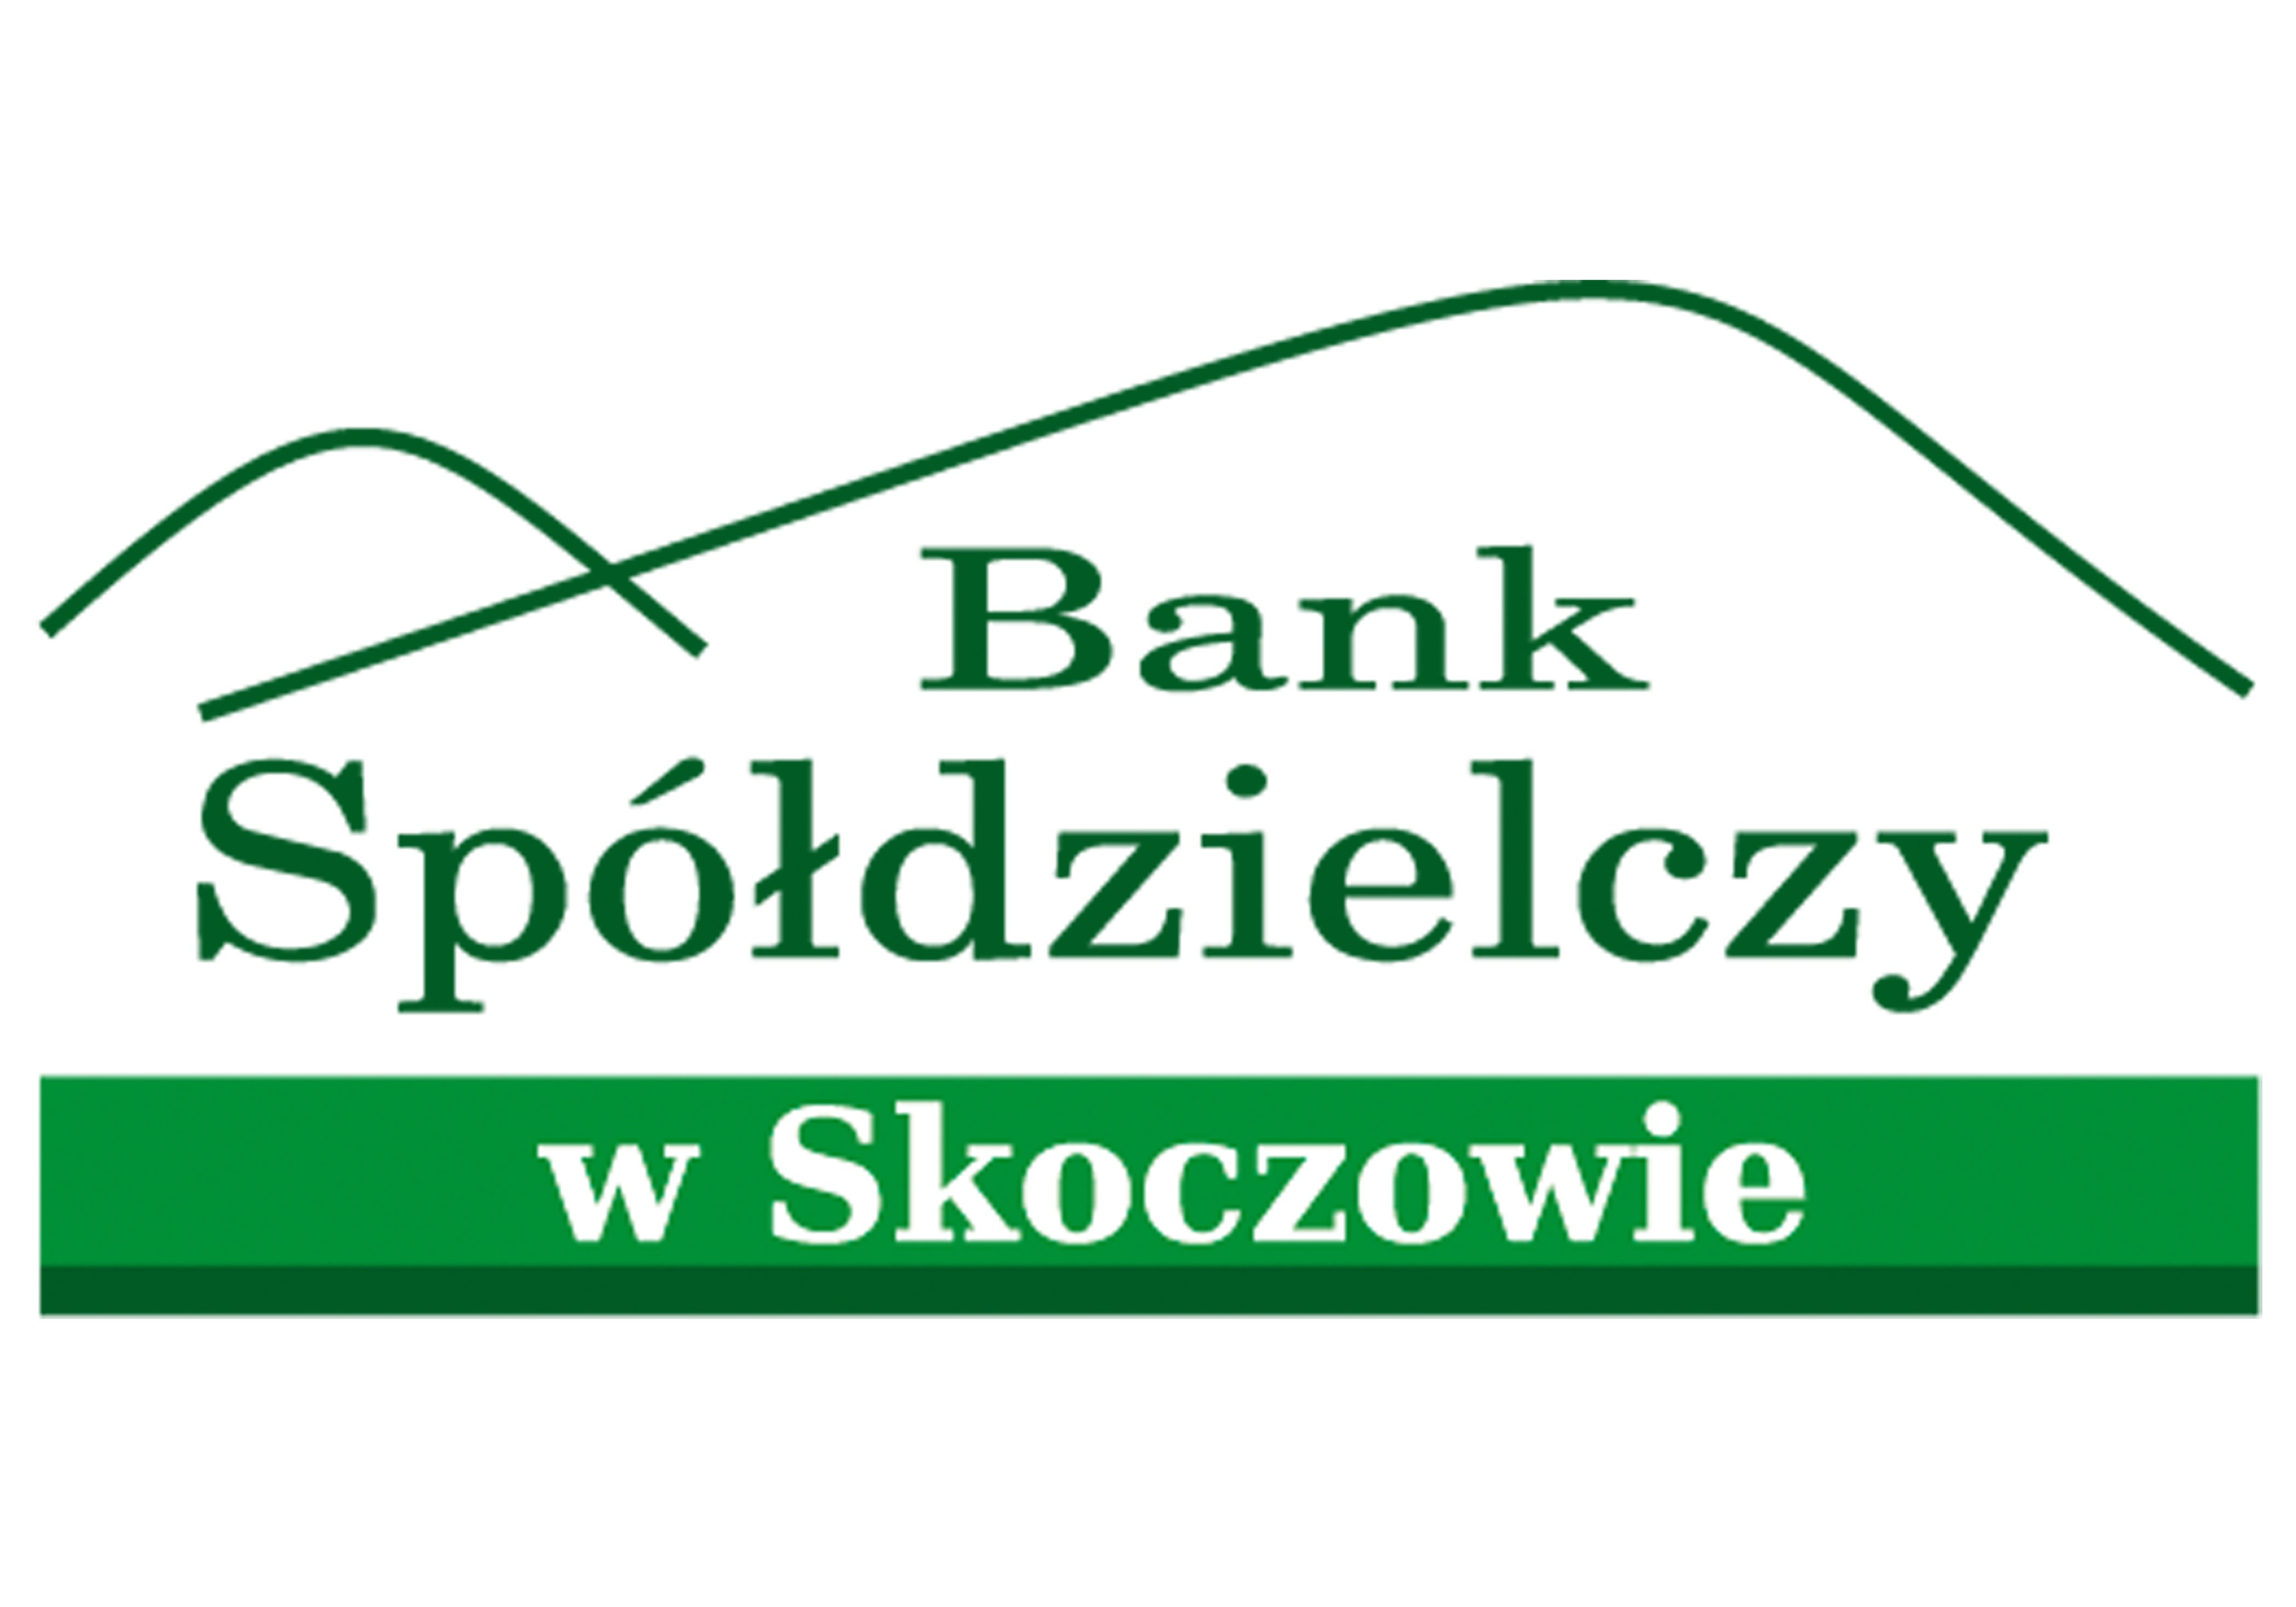 Załącznik do Uchwały nr 51/2013 Zarządu Banku Spółdzielczego w Skoczowie z dnia 13.03.